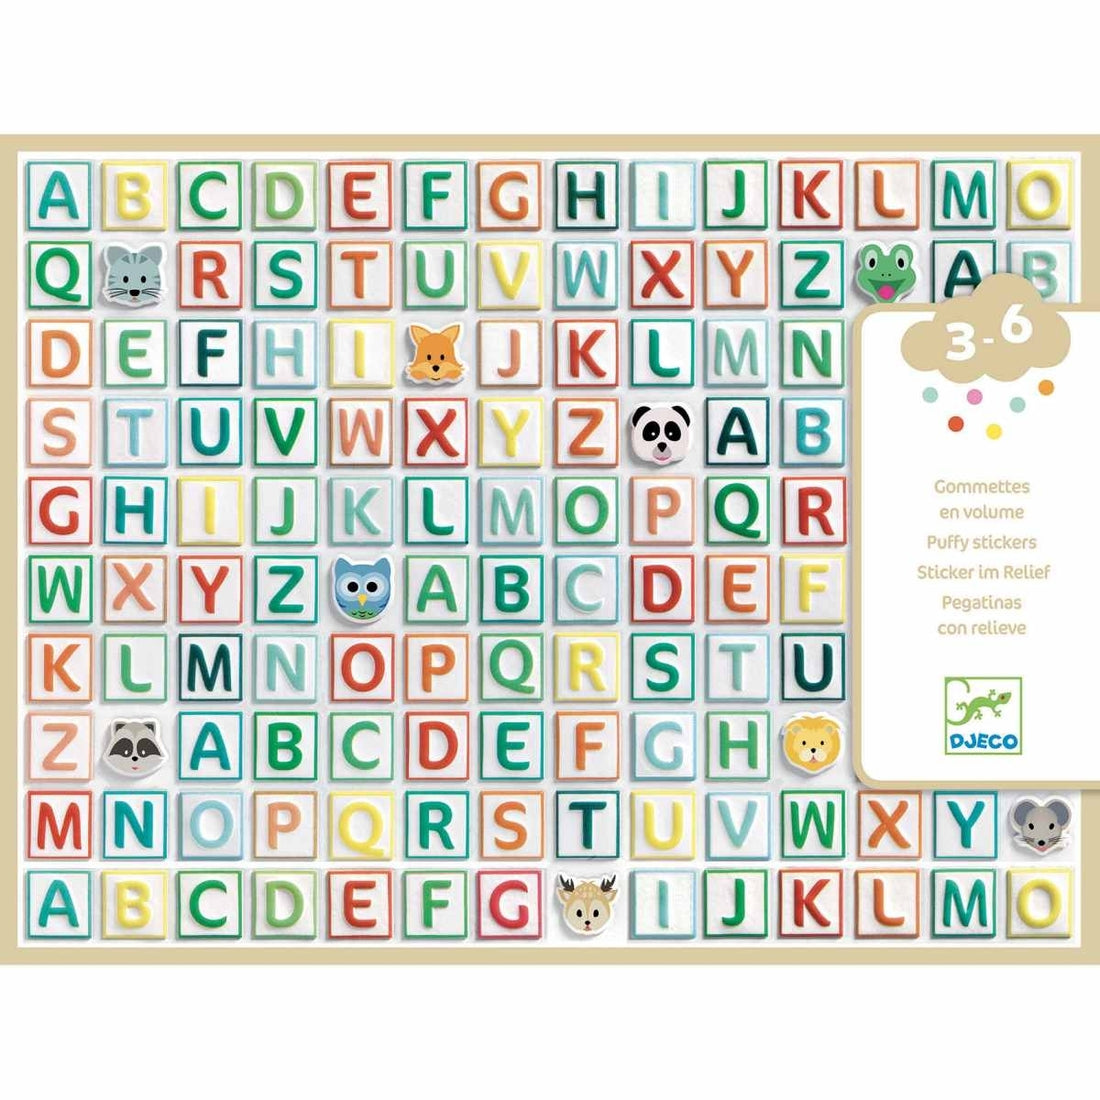 Große 3D-Sticker, um sich spielerisch mit den Buchstaben vertraut zu machen.   Erste Erfahrungen mit Collagen, ab 3 Jahren. Große Aufkleber, die leicht zu greifen sind: Sie sind dick und Überflüssige Teile wurden entfernt. Besonders weiche Aufkleber, die sich sehr gut anfühlen. Mehrere Kinder können zusammen kreativ sein. Erlernen des Alphabets.